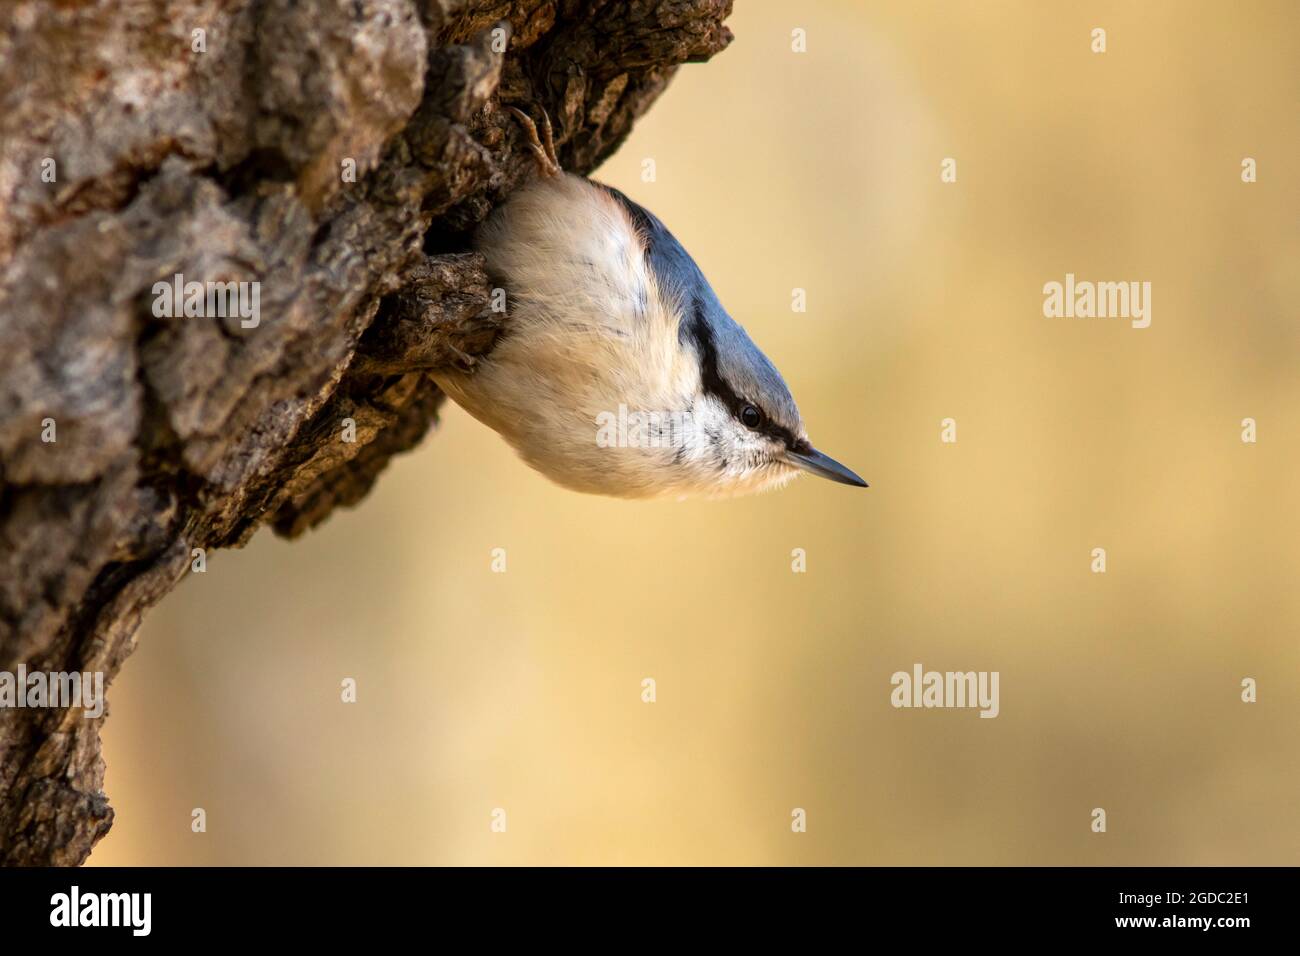 Schöner kleiner singvögel, Eurasischer Nuthatch (Sitta europaea), der auf einem Baumstamm in estnischer Natur klettert Stockfoto